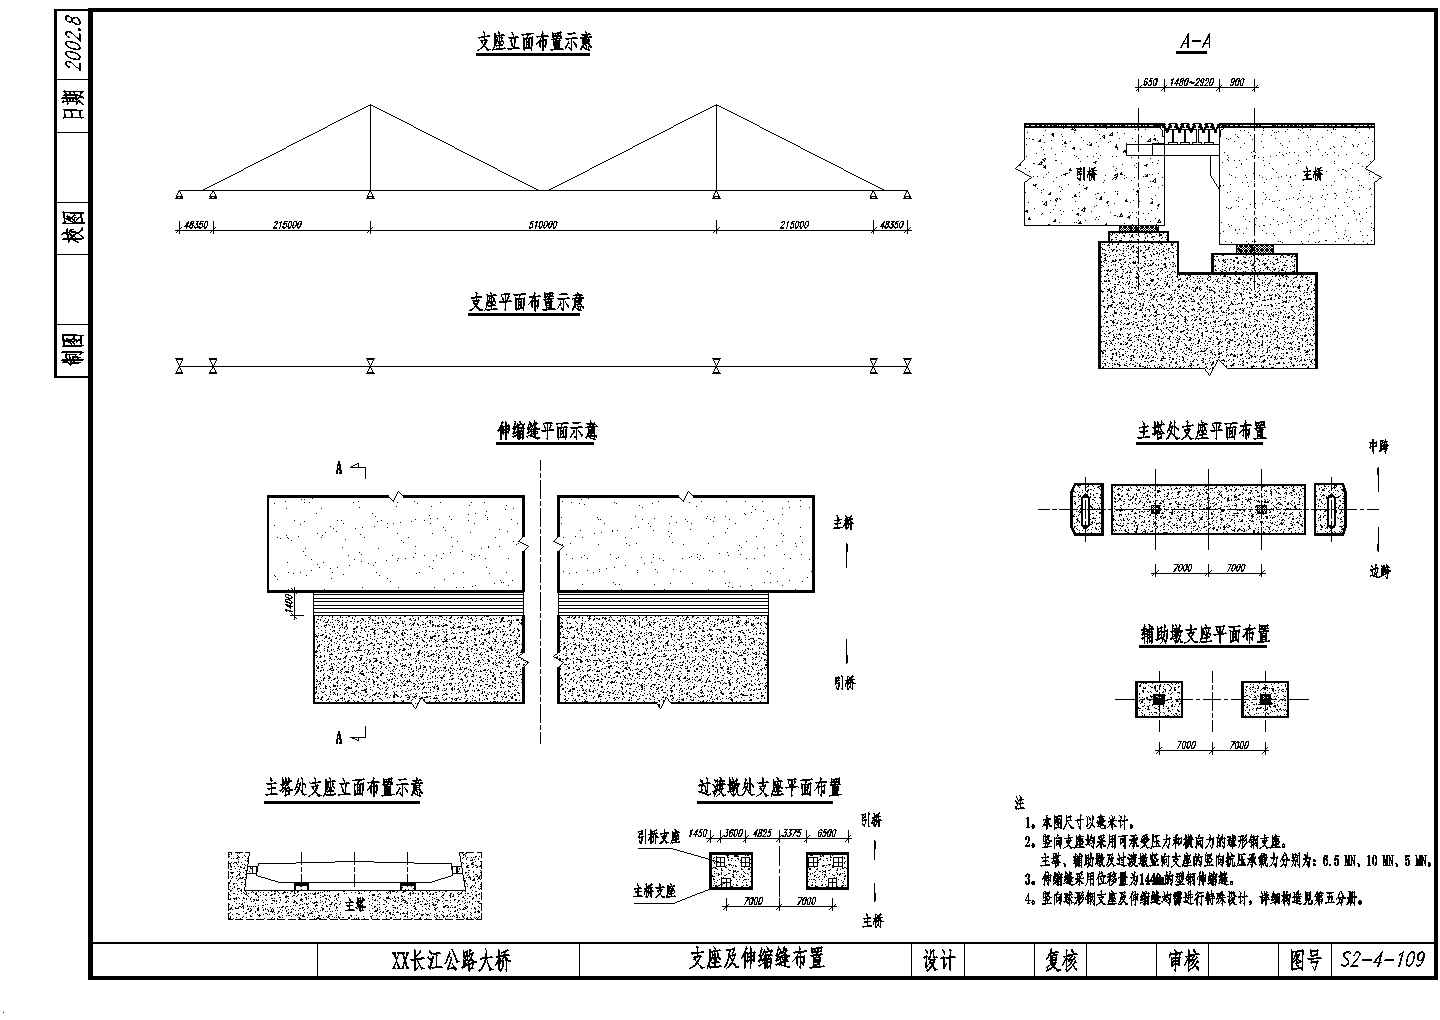 公路跨长江特大组合体系桥梁支座及伸缩缝装置节点详图设计